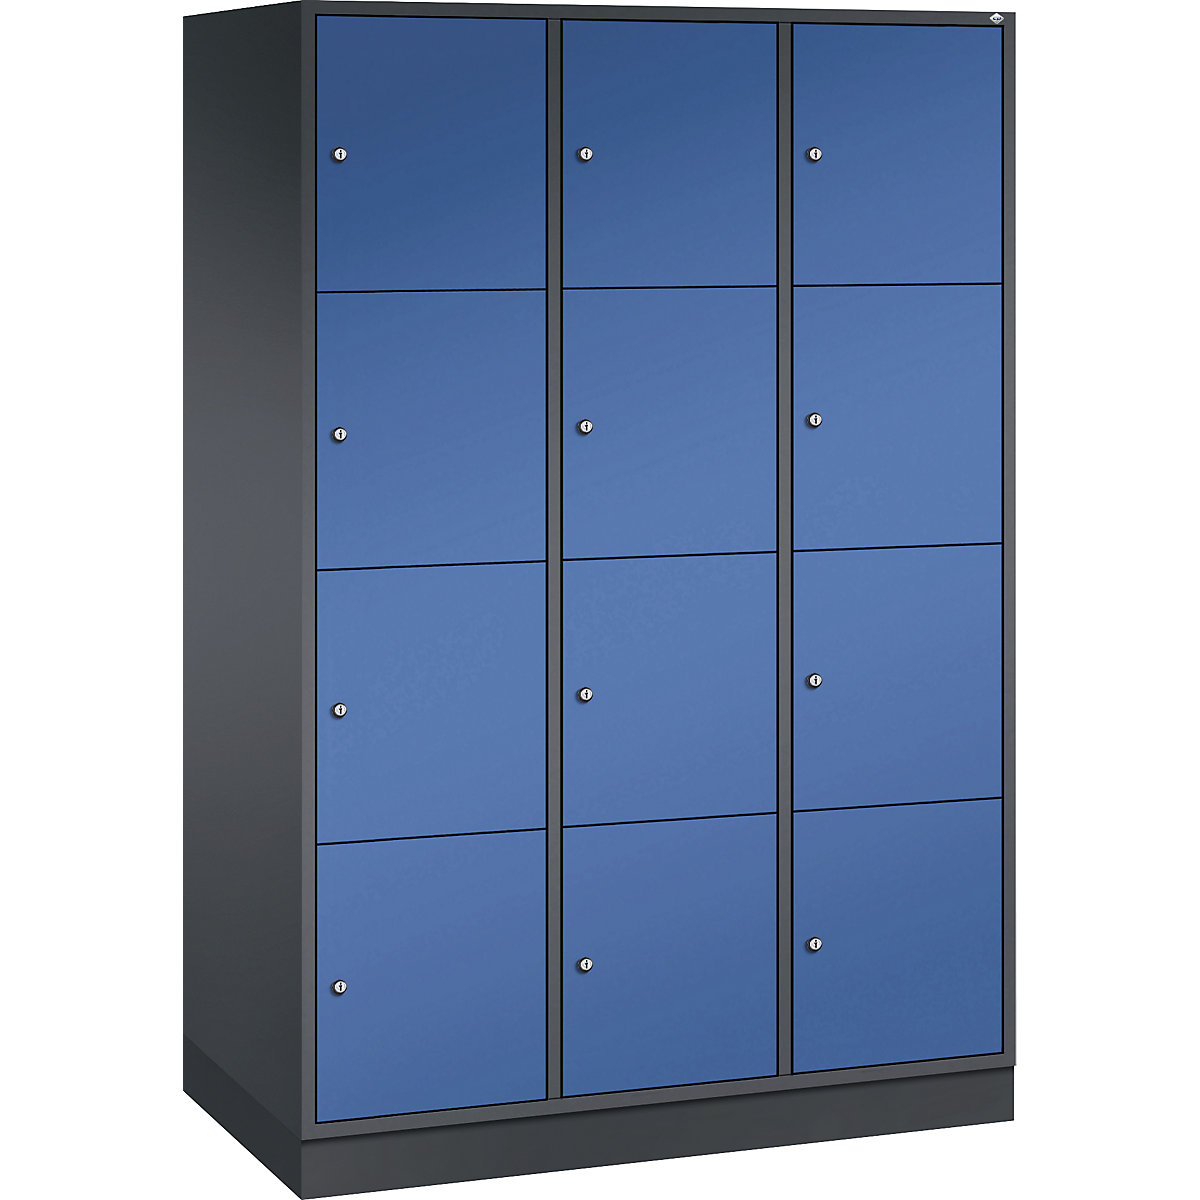 Vestiaire multicases en acier INTRO, casiers hauteur 435 mm – C+P, l x p 1220 x 600 mm, 12 casiers, corps gris noir, portes bleu gentiane-8